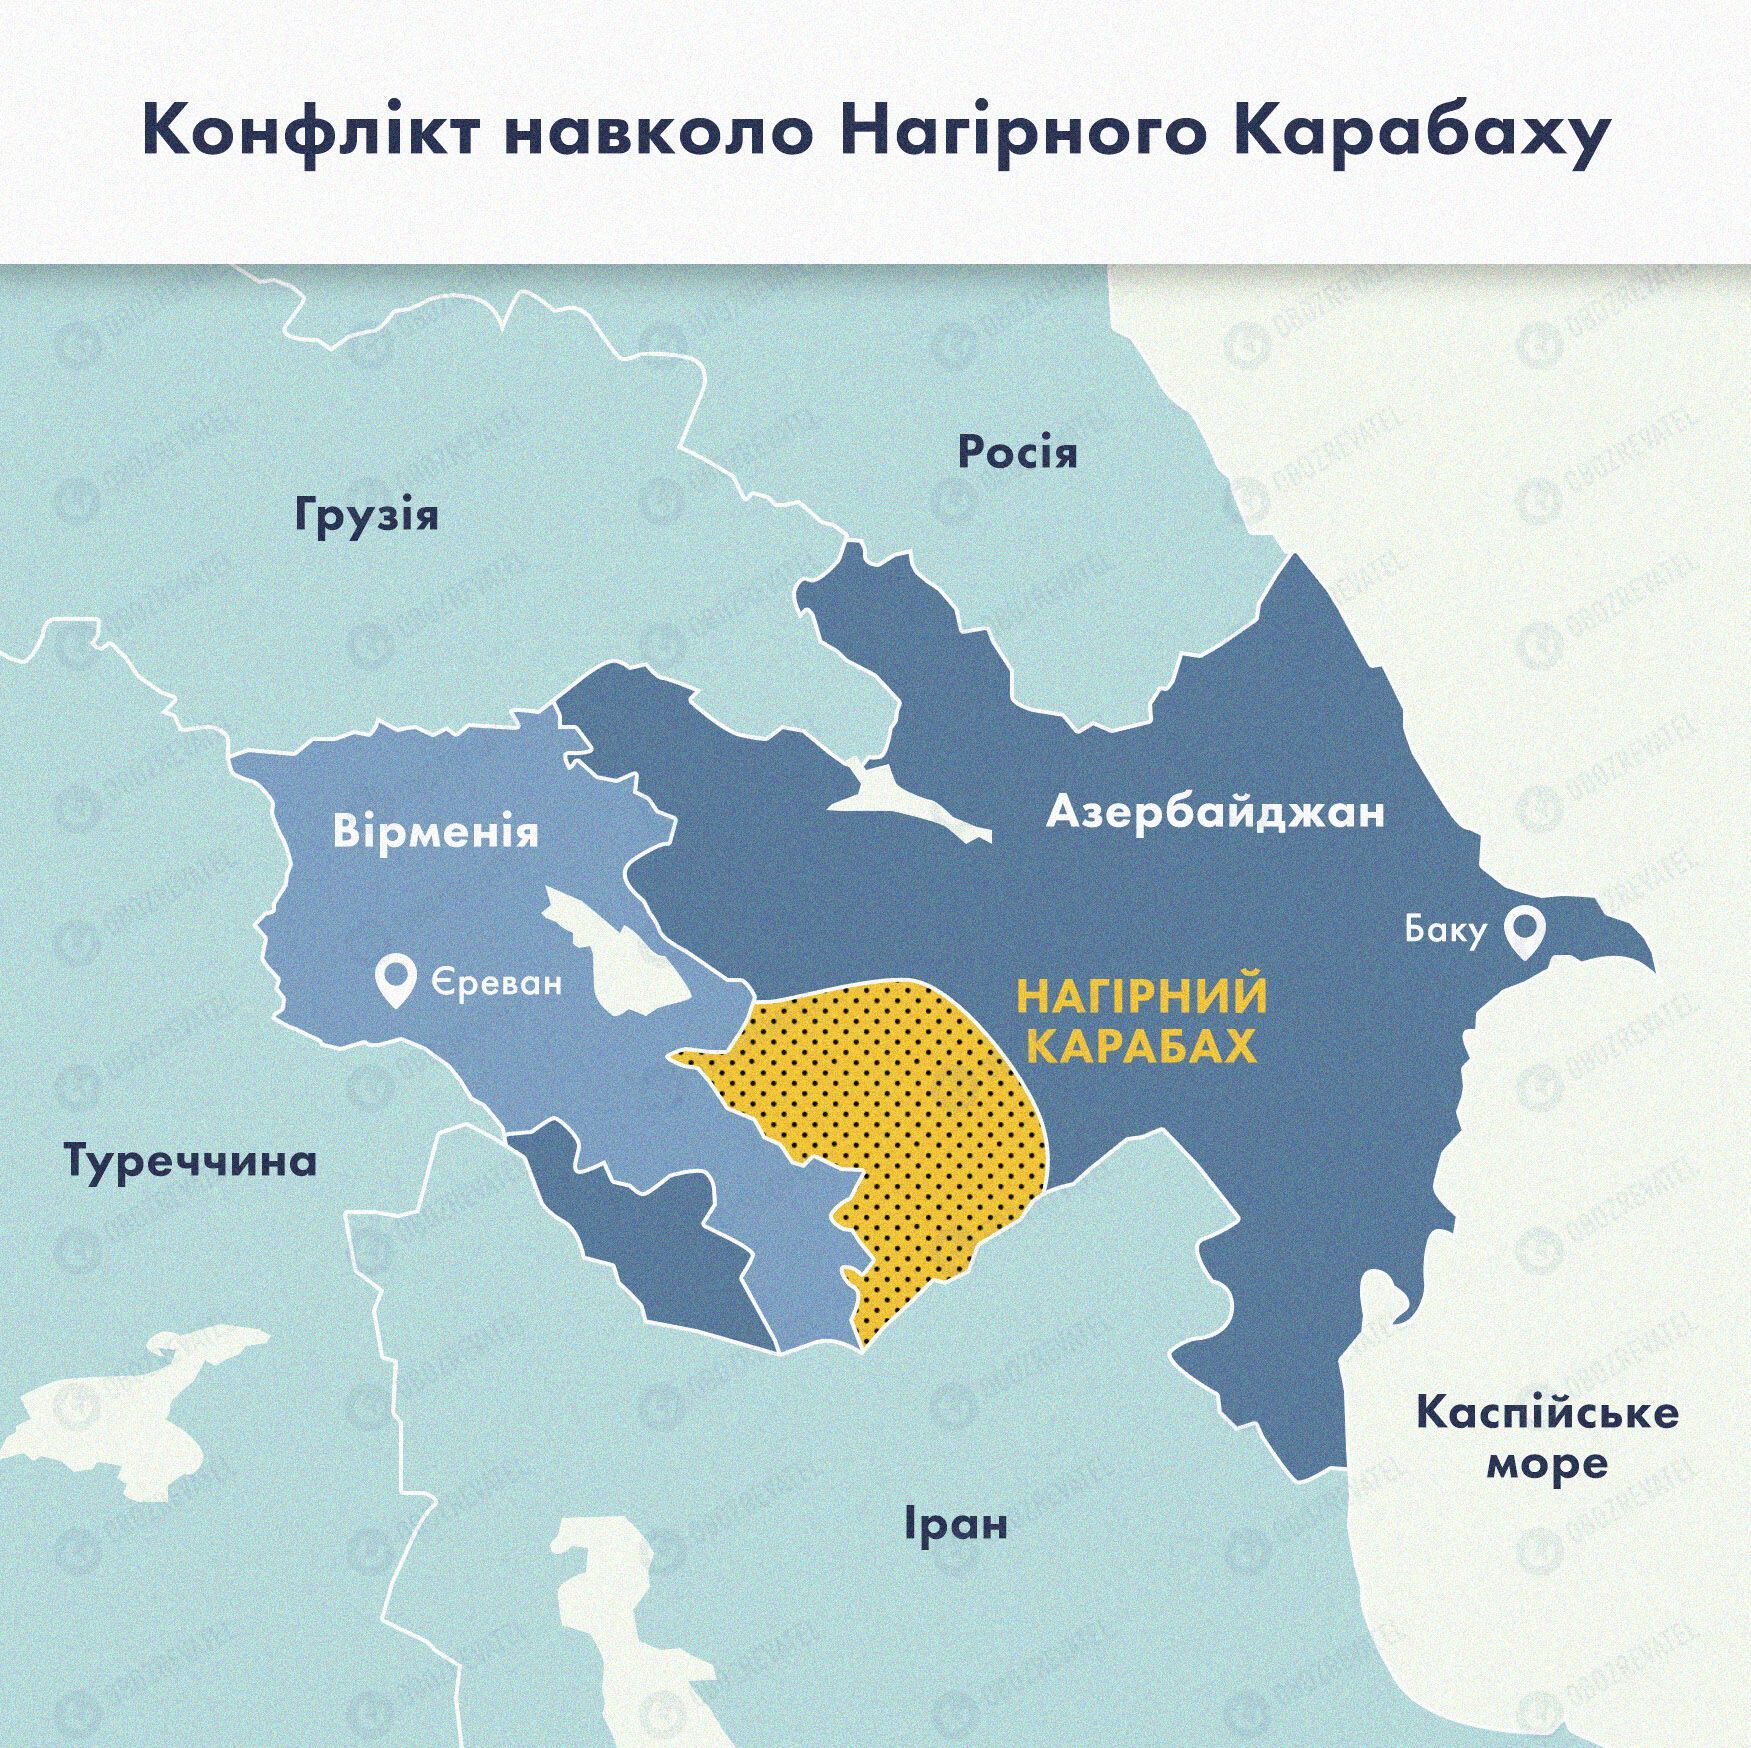 Карта конфликта в Нагорном Карабахе.